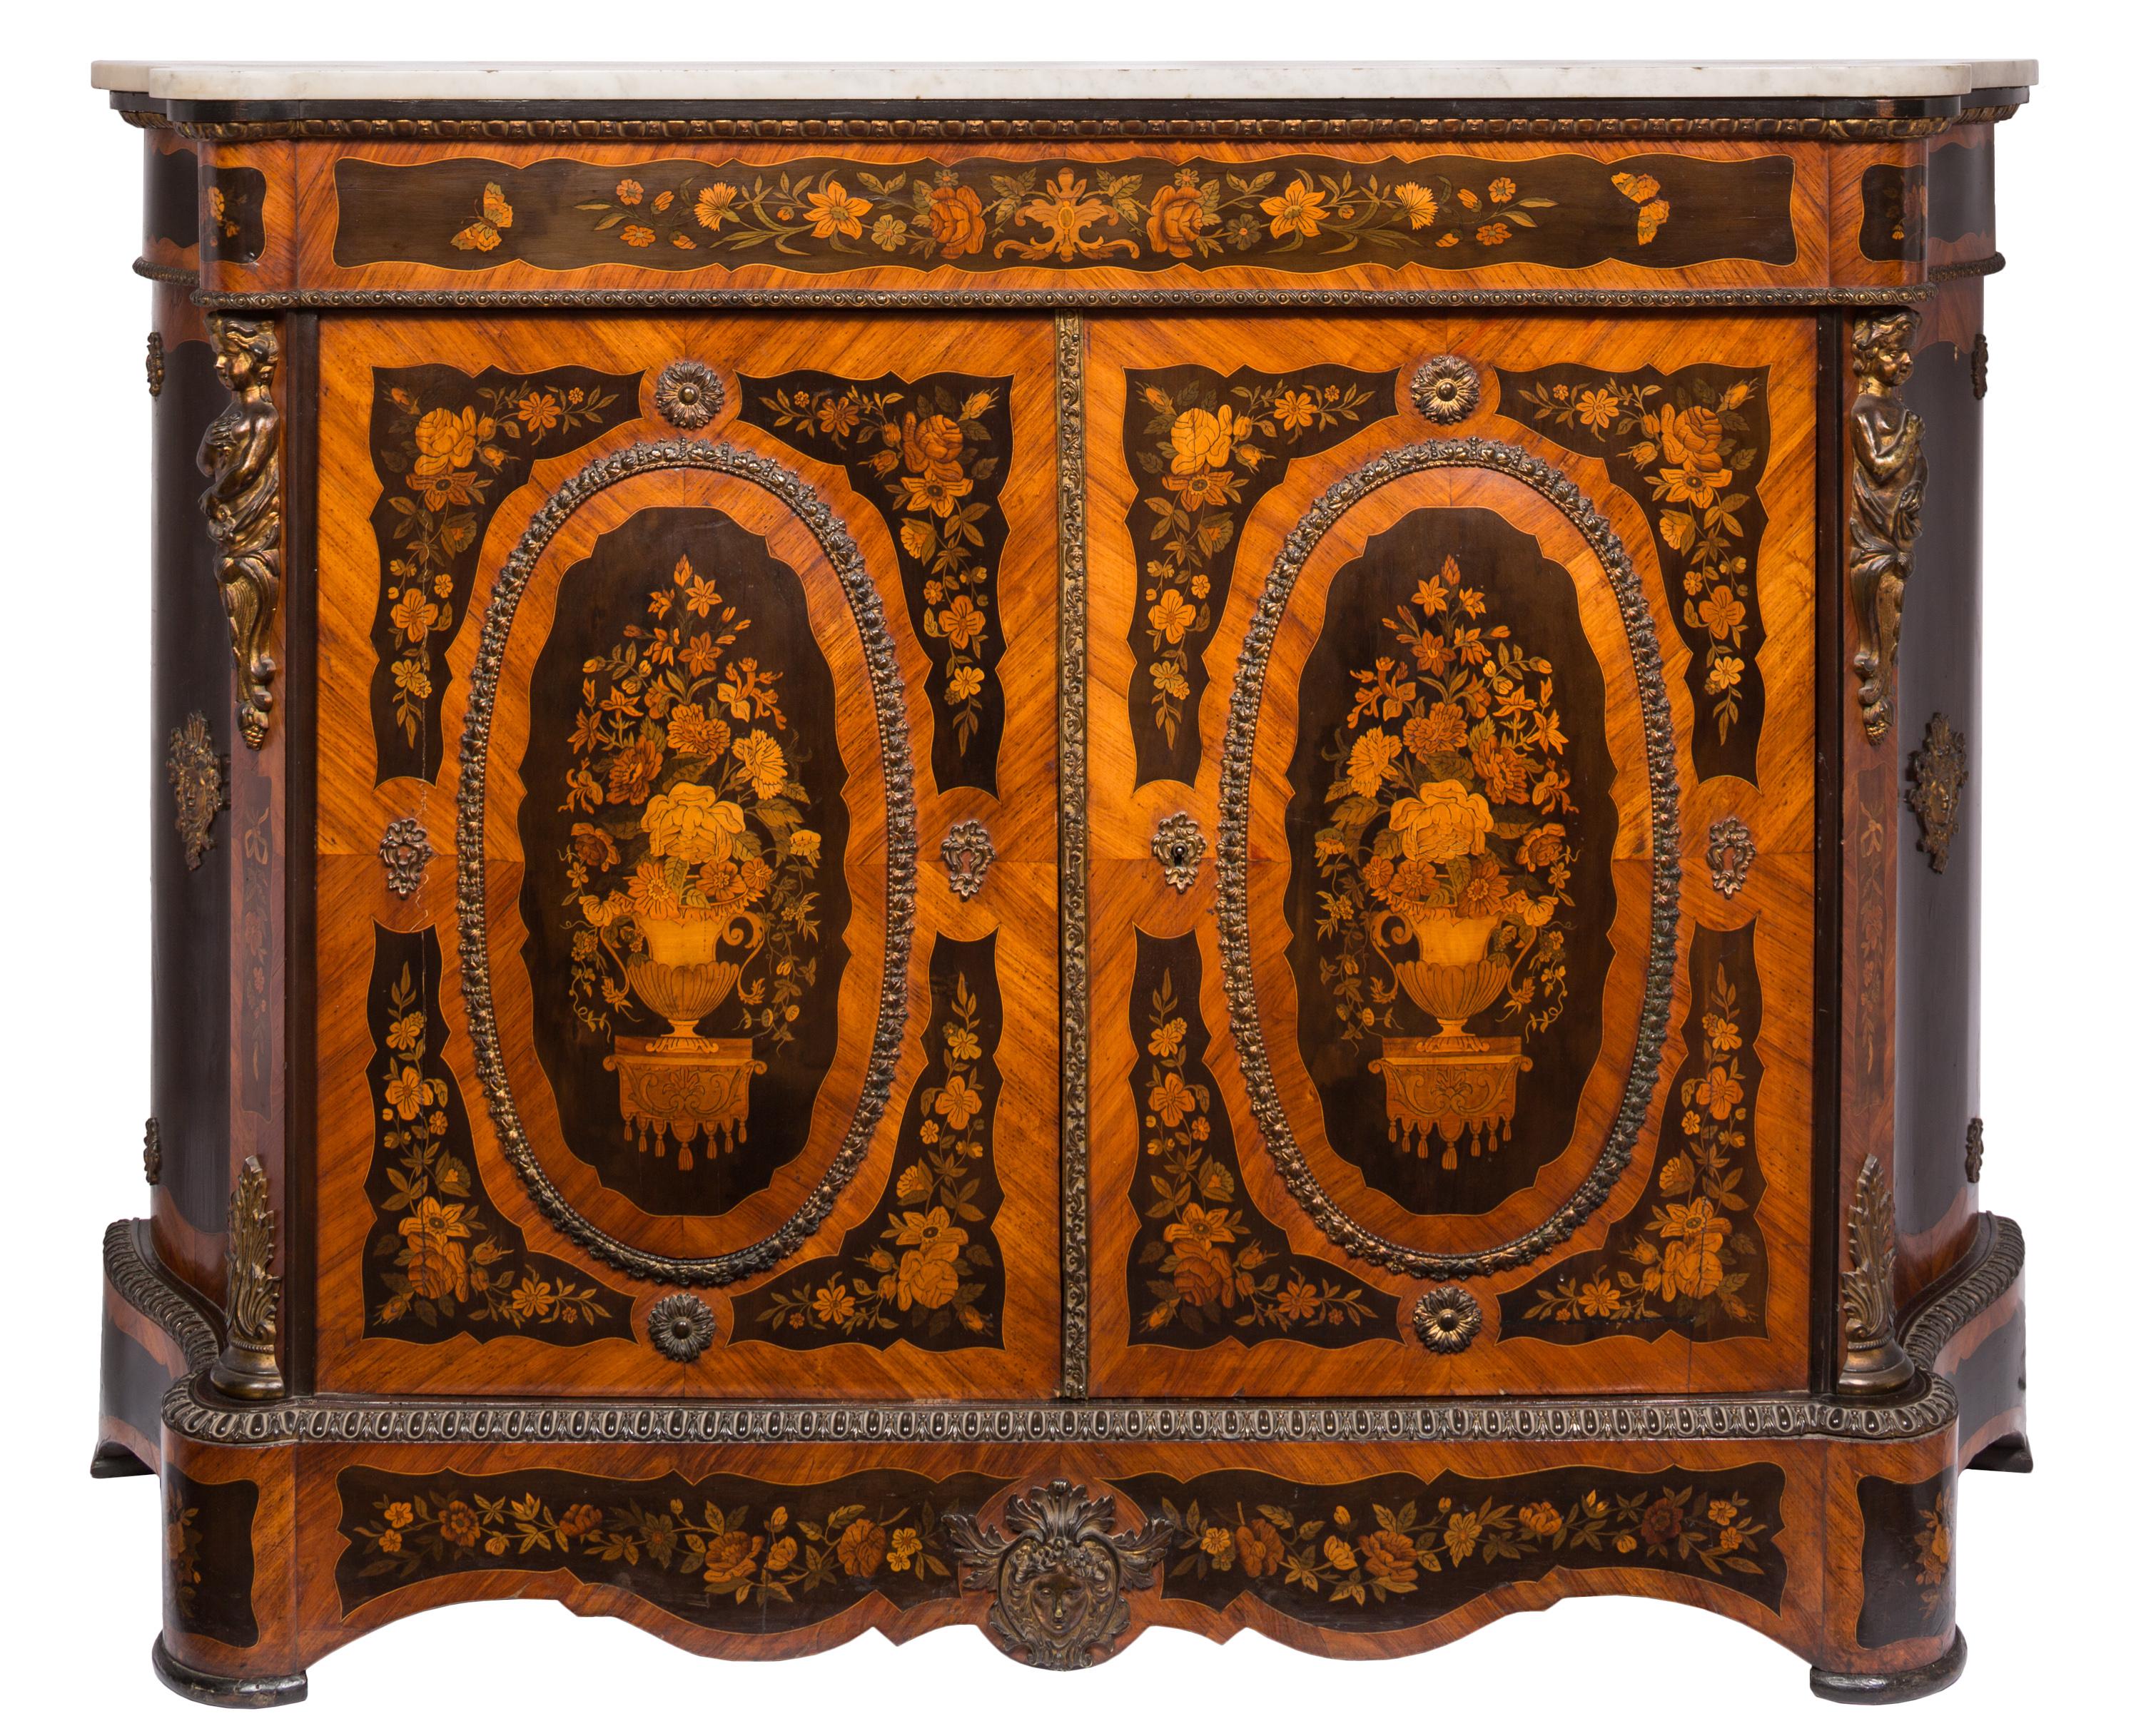 Paire d'armoires latérales à double porte de style Louis XVI, datant du XIXe siècle, avec marqueterie complexe à motifs floraux en bois et détails en bronze doré. La zone centrale ovale de chaque porte est légèrement convexe, et les côtés des